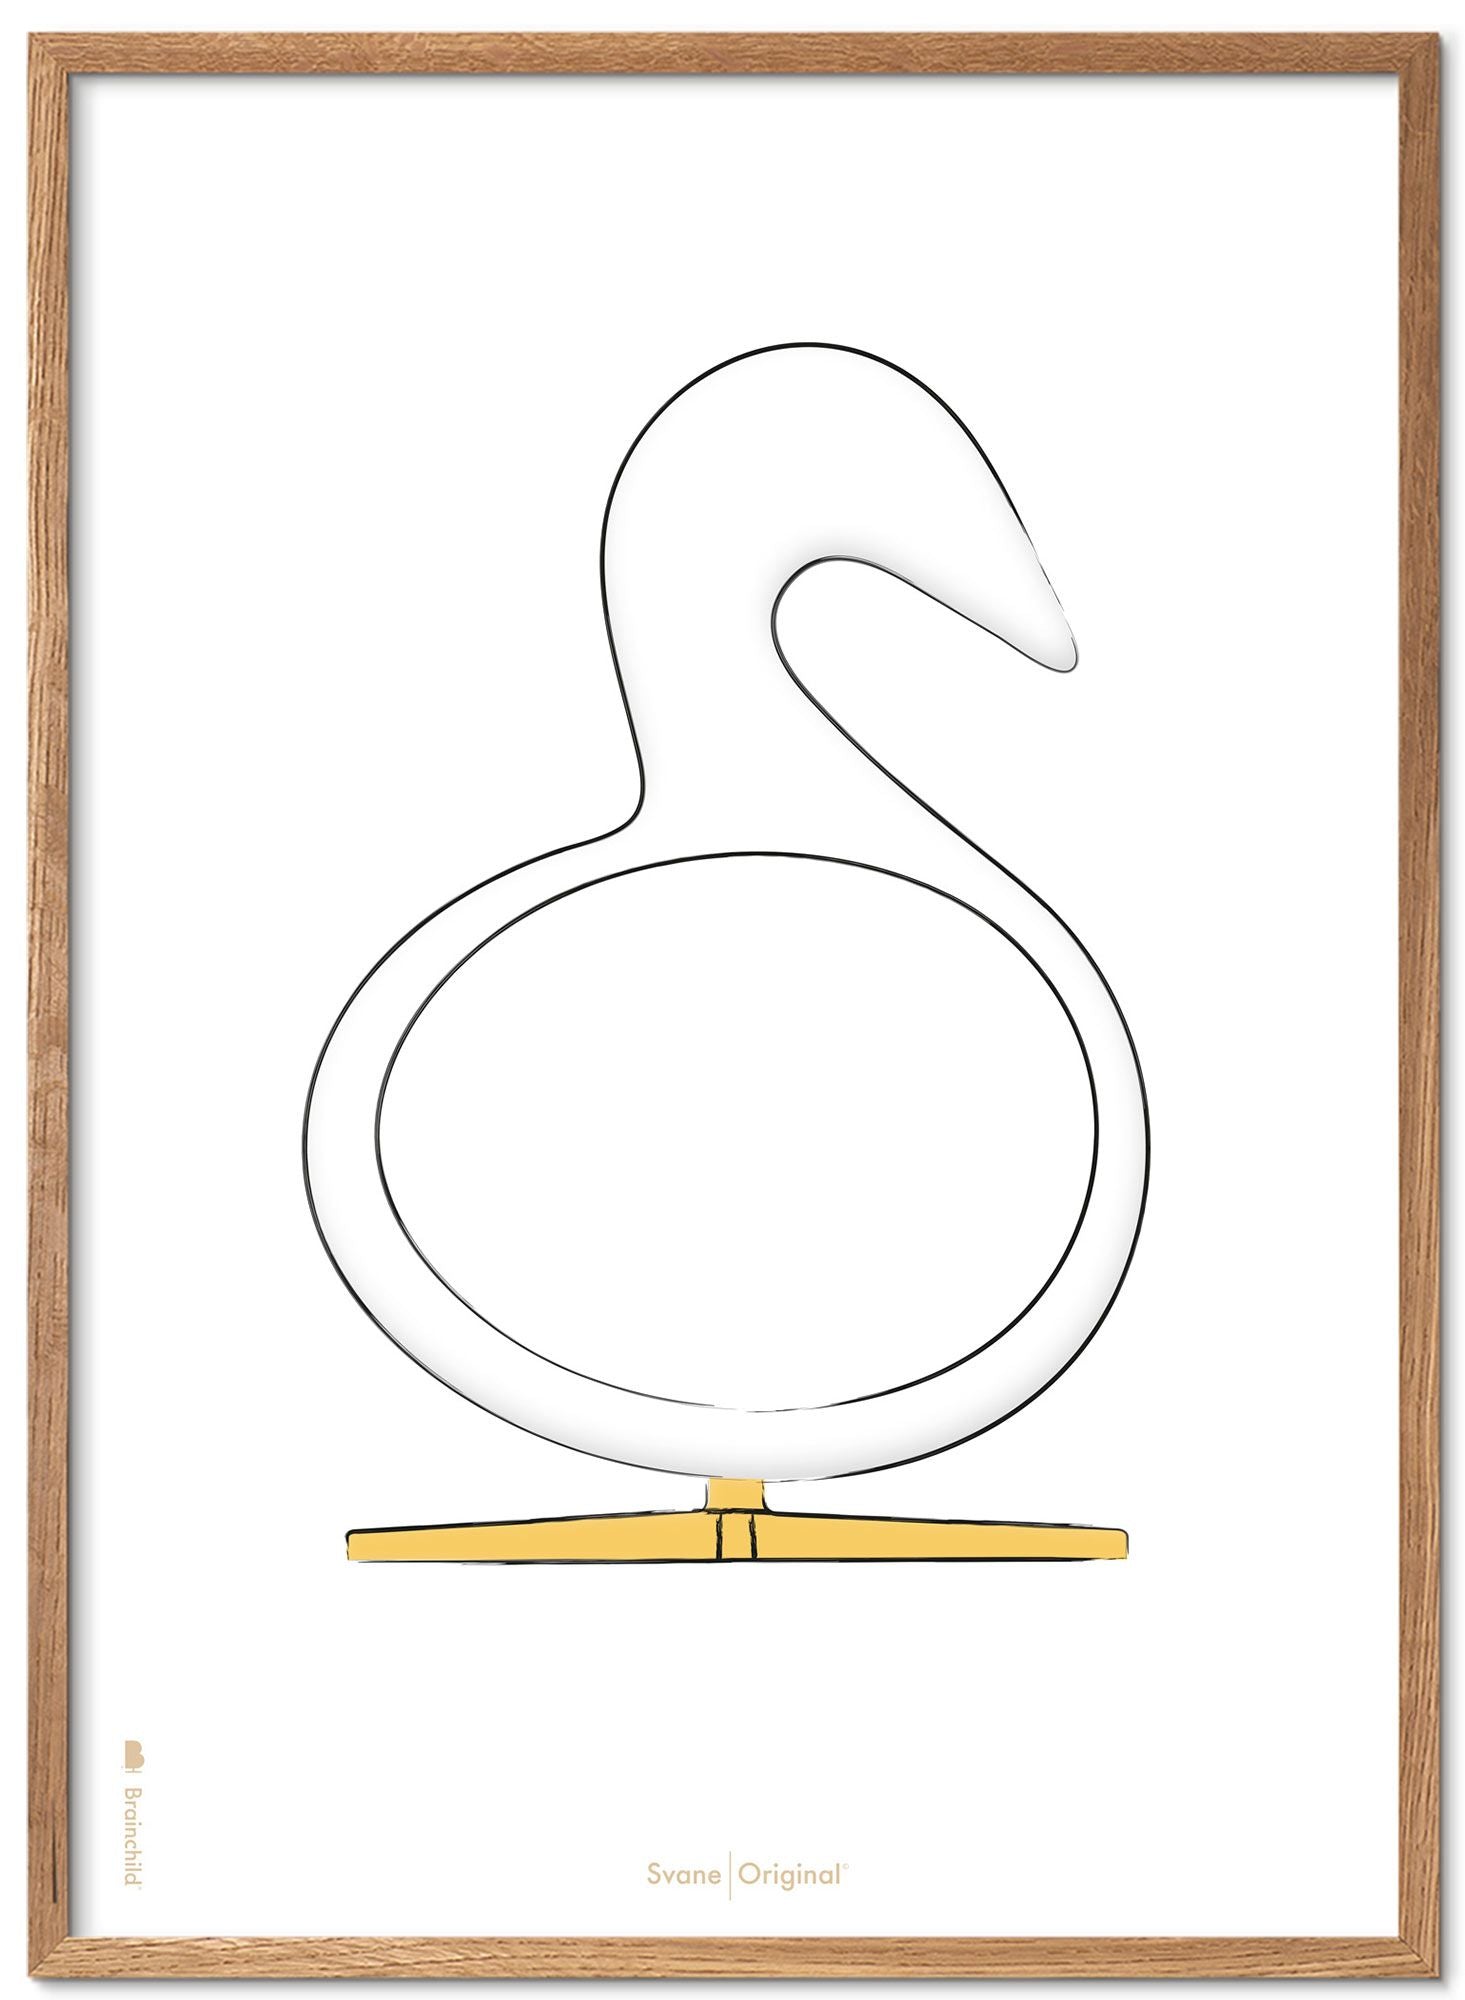 Schema poster di schizzo del disegno del cigno da gioco in legno chiaro 70x100 cm, sfondo bianco